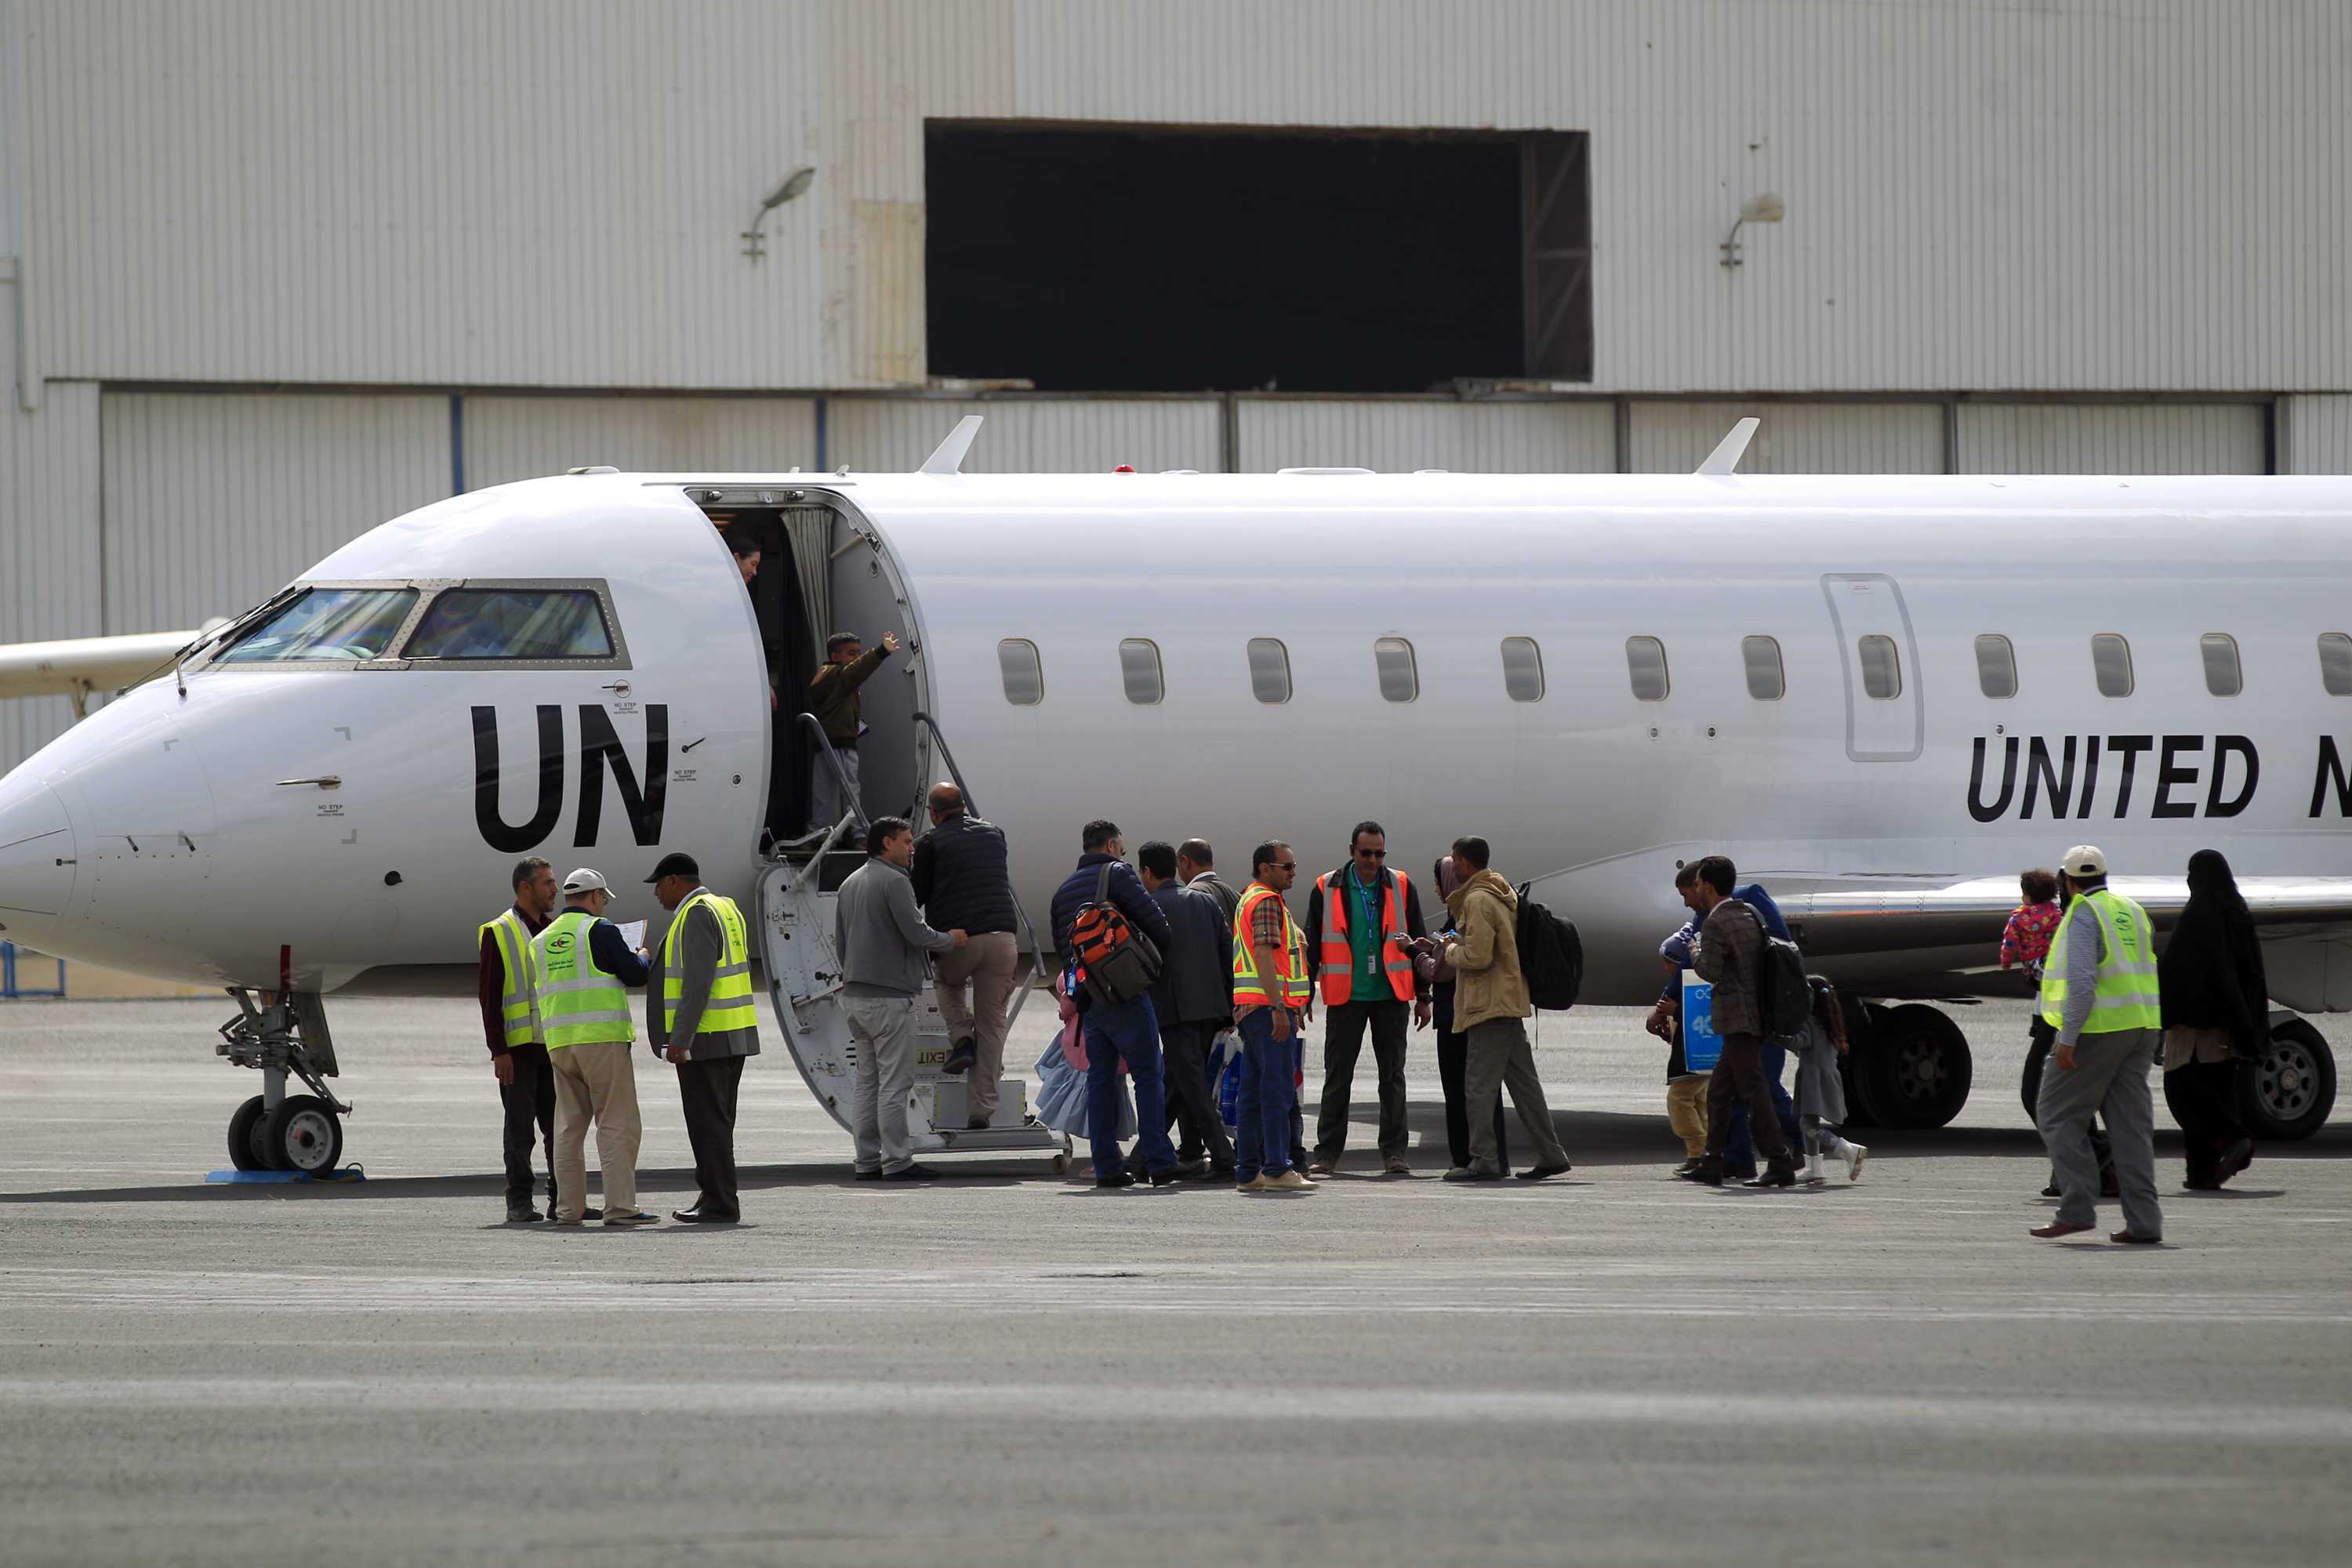 كيف نظمت الأمم المتحدة ومكاتبها عملية تهريب قيادات حوثية من وإلى صنعاء؟